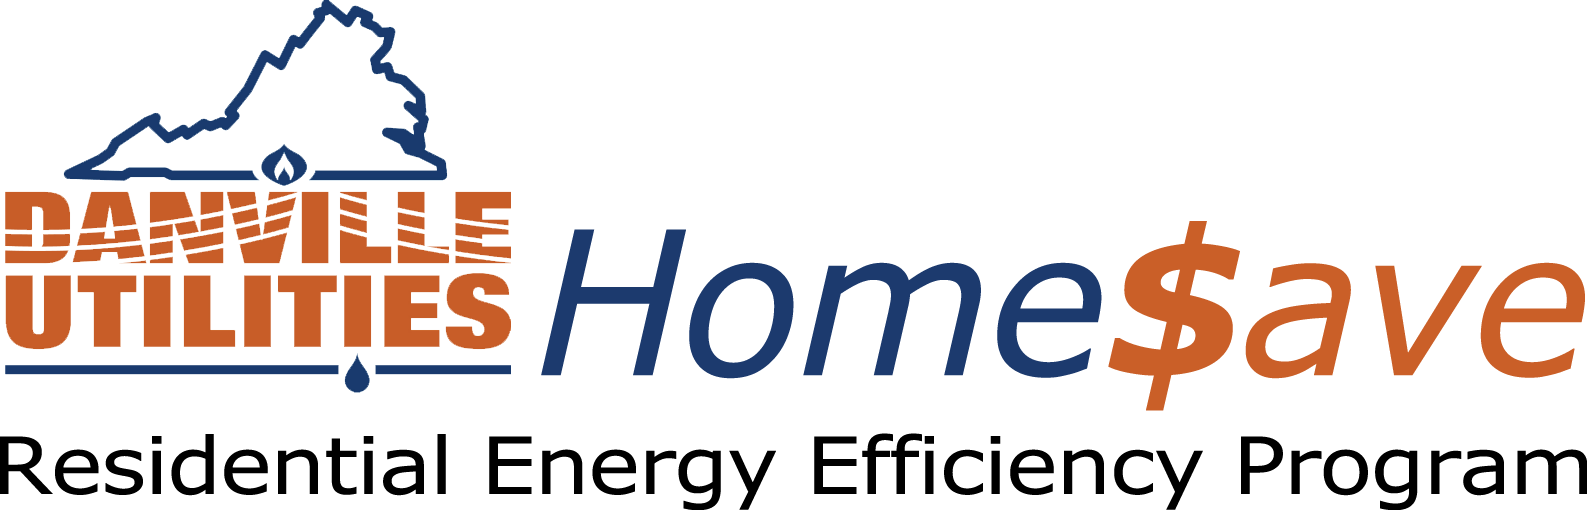 Rebate Logo - Residential Energy Efficiency Program